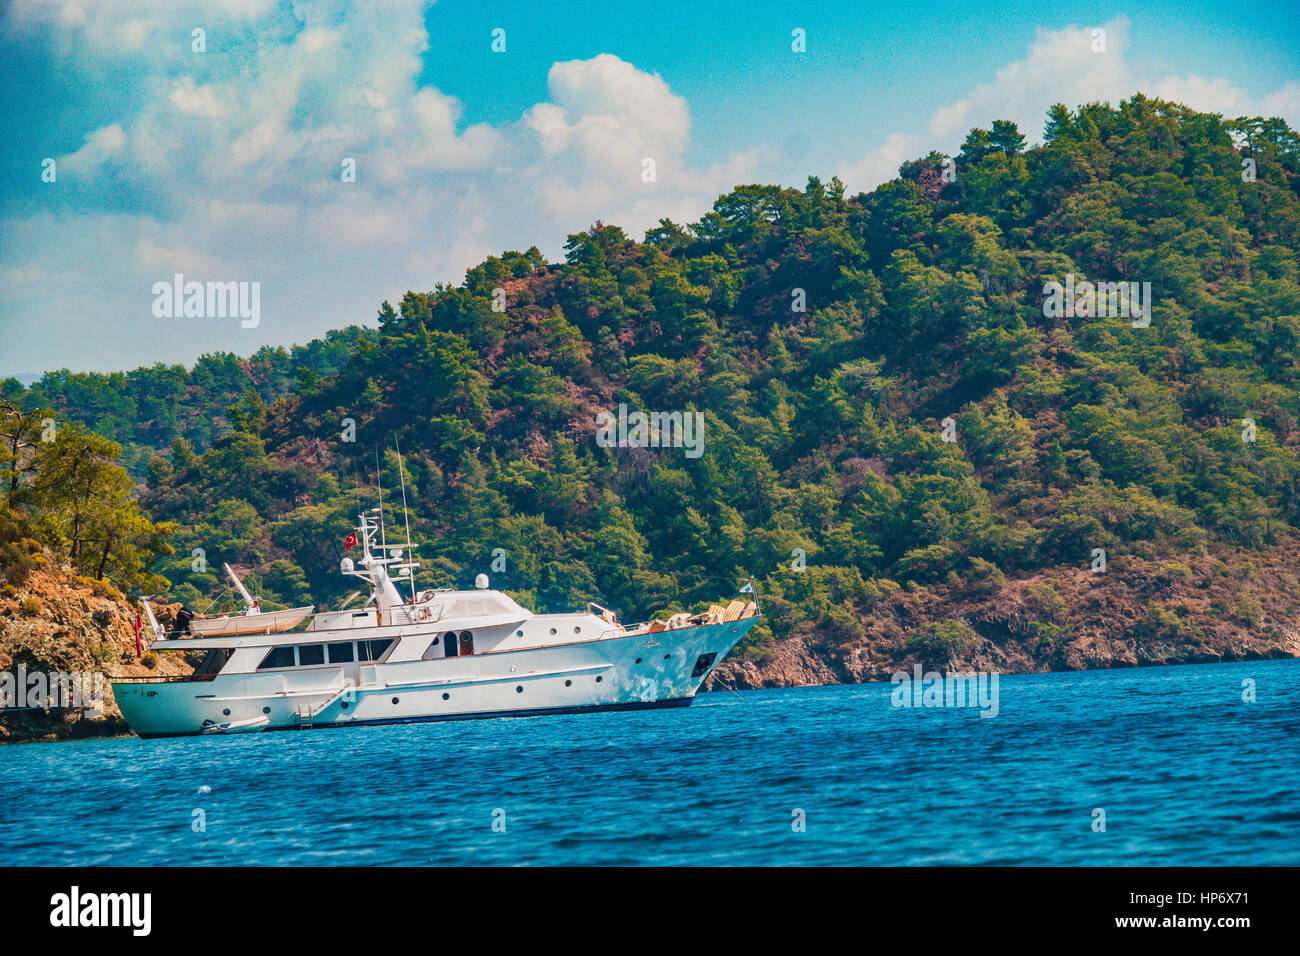 Luxury motor yacht ancorati a Gocek Bay - Gocek koylarinda demirli motoryat luks Foto Stock